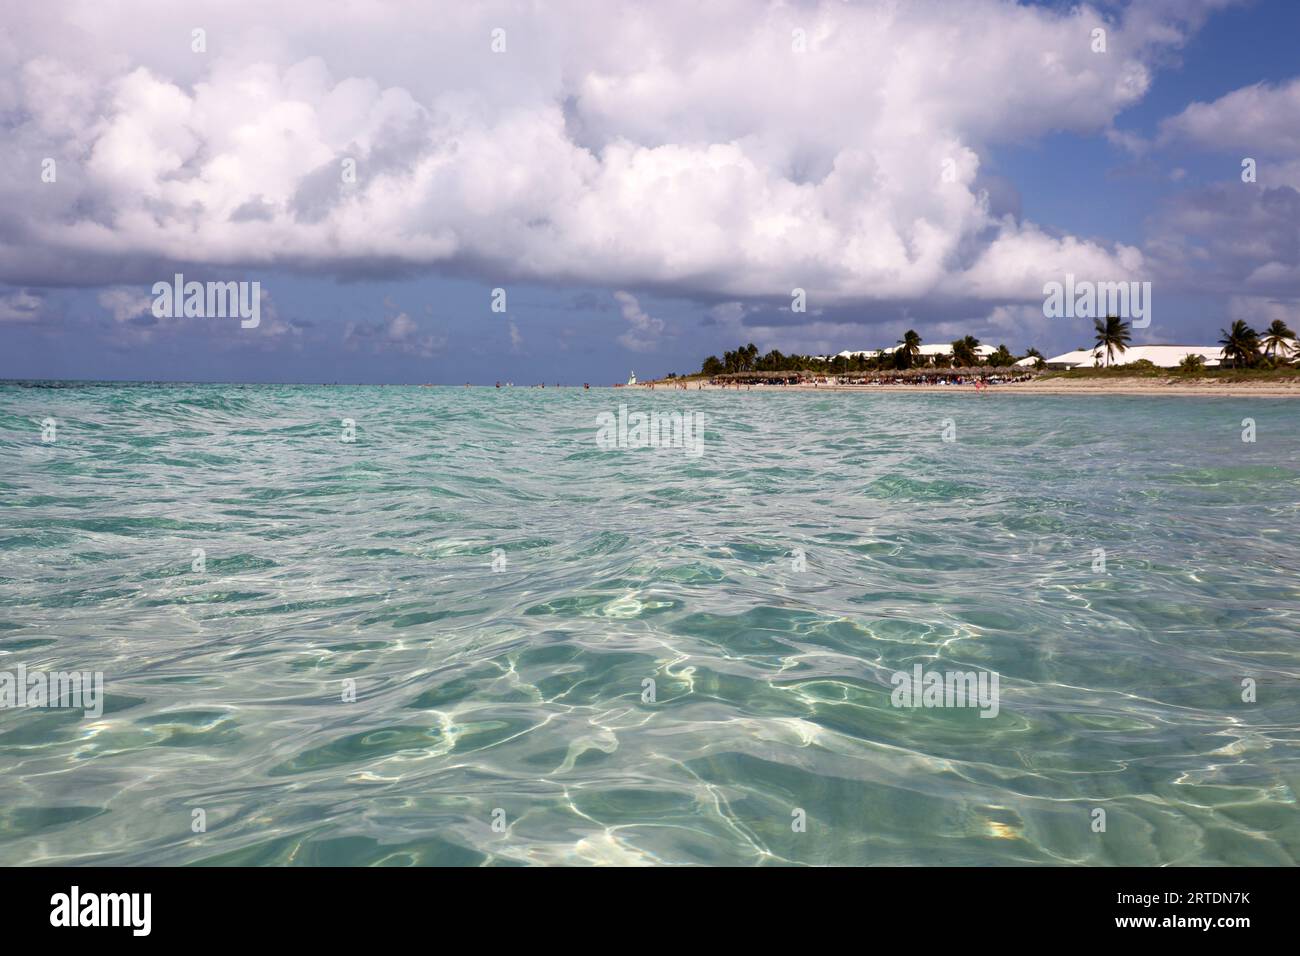 Vue de la surface de l'océan à la plage tropicale avec des gens, côte sablonneuse et palmiers de cocotiers. Station balnéaire sur l'île des Caraïbes avec de l'eau claire Banque D'Images